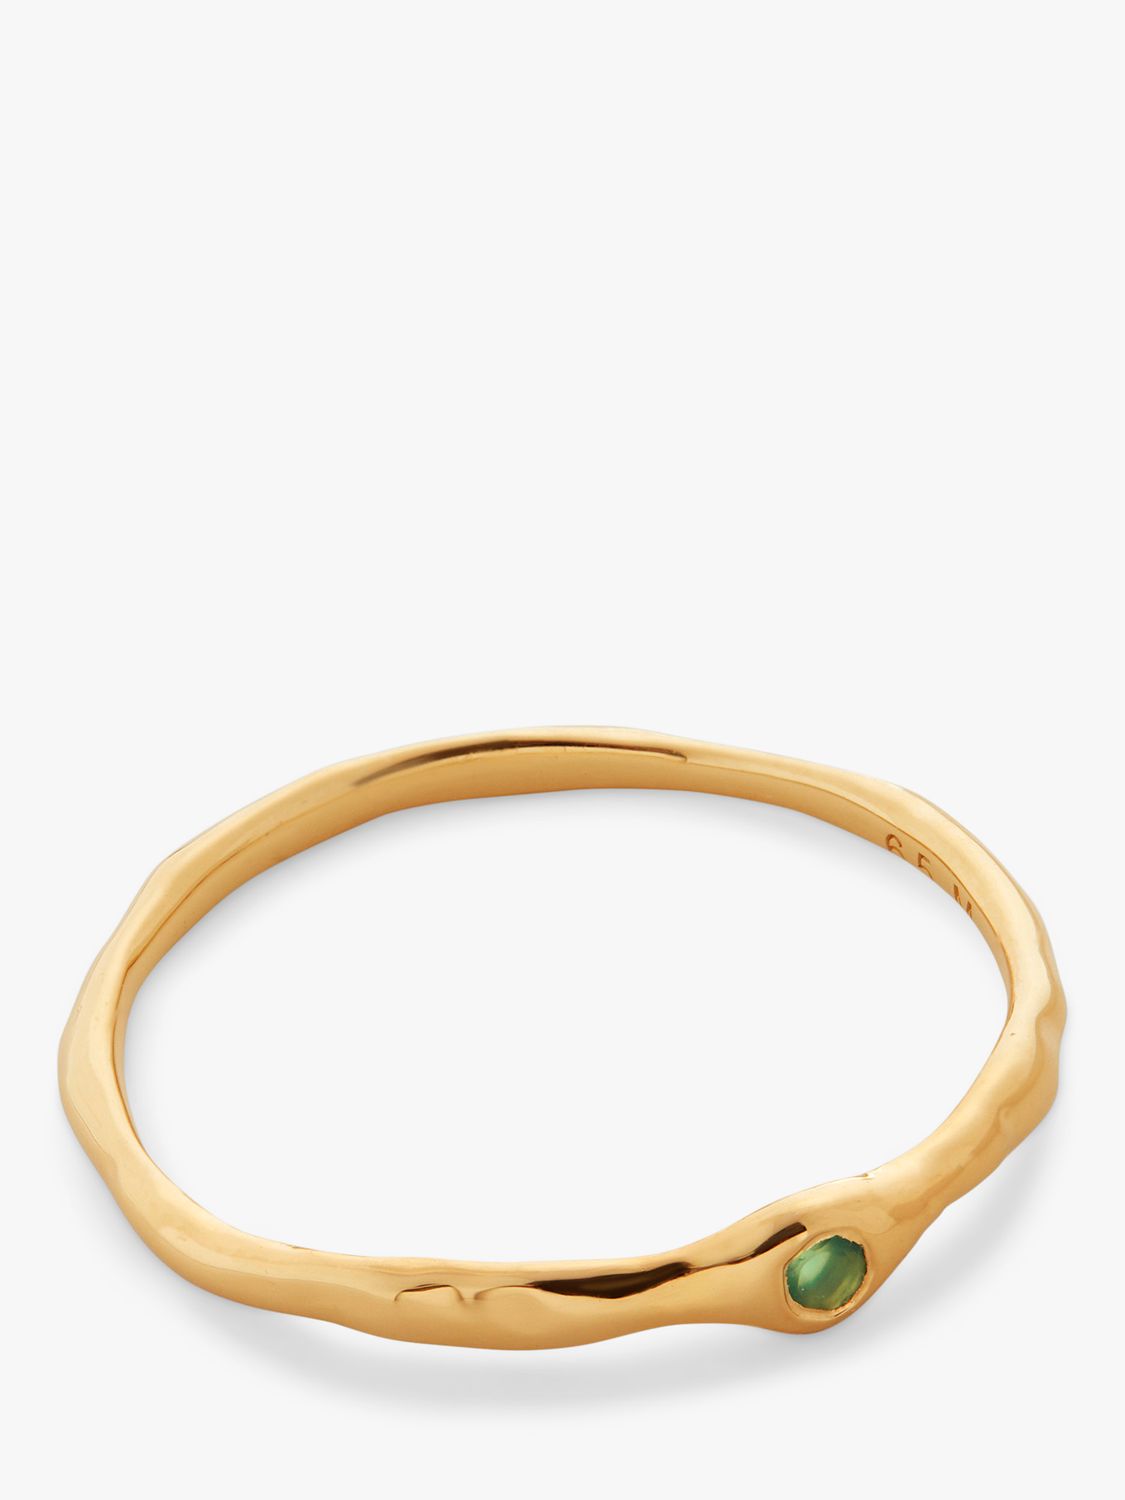 Buy Monica Vinader Siren Mini Green Onyx Ring, Gold Online at johnlewis.com